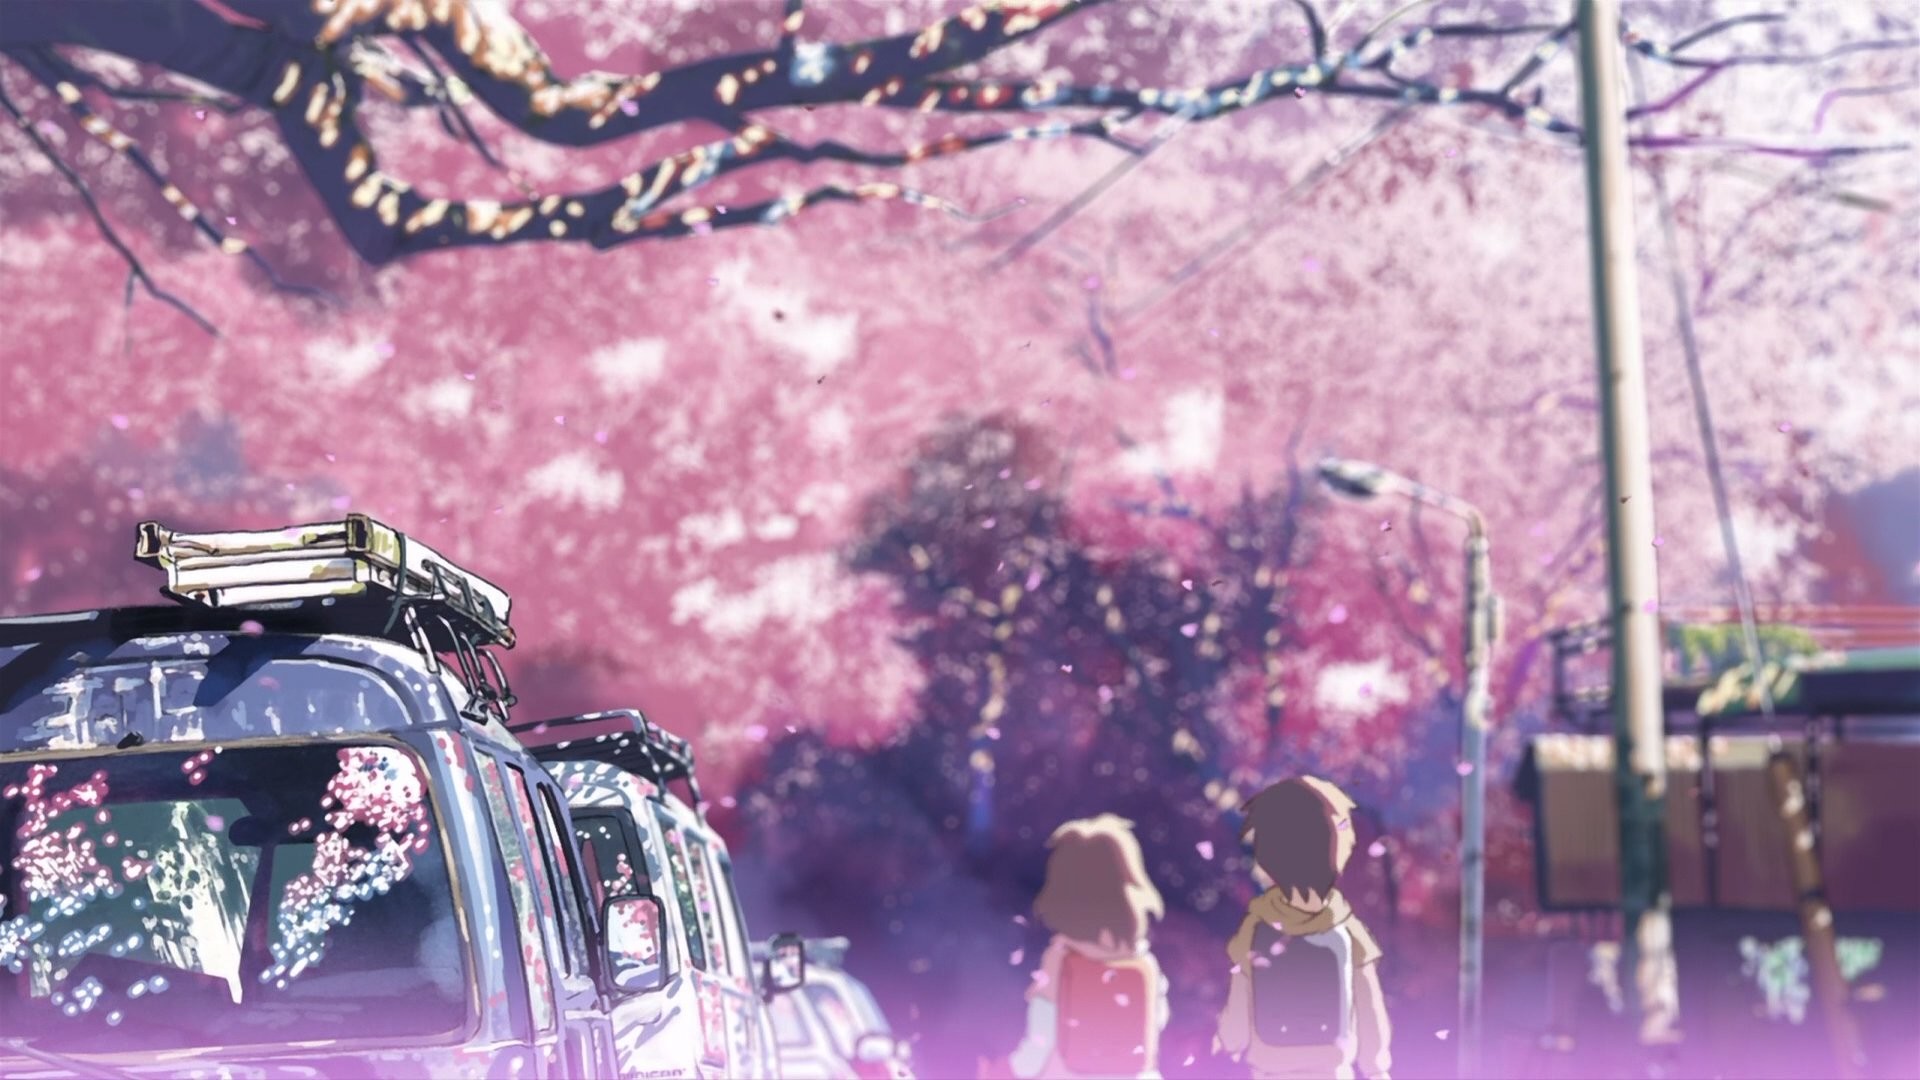 1920x1080 Cherry blossoms Makoto Shinkai 5 Centimeters Per Second wallpaper |   | 246734 | WallpaperUP